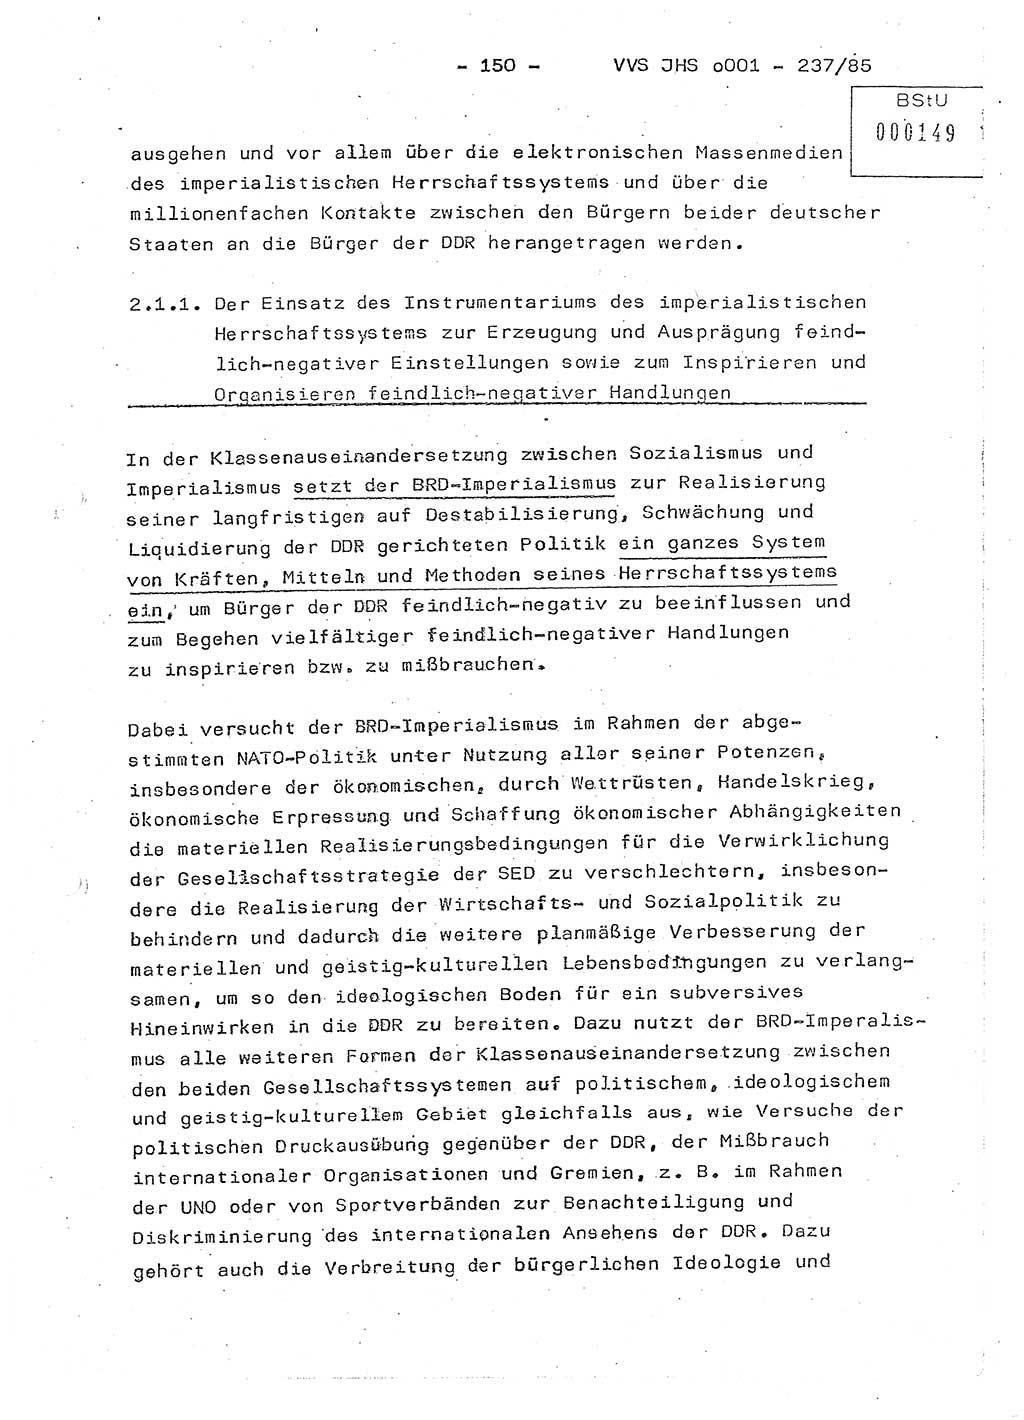 Dissertation Oberstleutnant Peter Jakulski (JHS), Oberstleutnat Christian Rudolph (HA Ⅸ), Major Horst Böttger (ZMD), Major Wolfgang Grüneberg (JHS), Major Albert Meutsch (JHS), Ministerium für Staatssicherheit (MfS) [Deutsche Demokratische Republik (DDR)], Juristische Hochschule (JHS), Vertrauliche Verschlußsache (VVS) o001-237/85, Potsdam 1985, Seite 150 (Diss. MfS DDR JHS VVS o001-237/85 1985, S. 150)